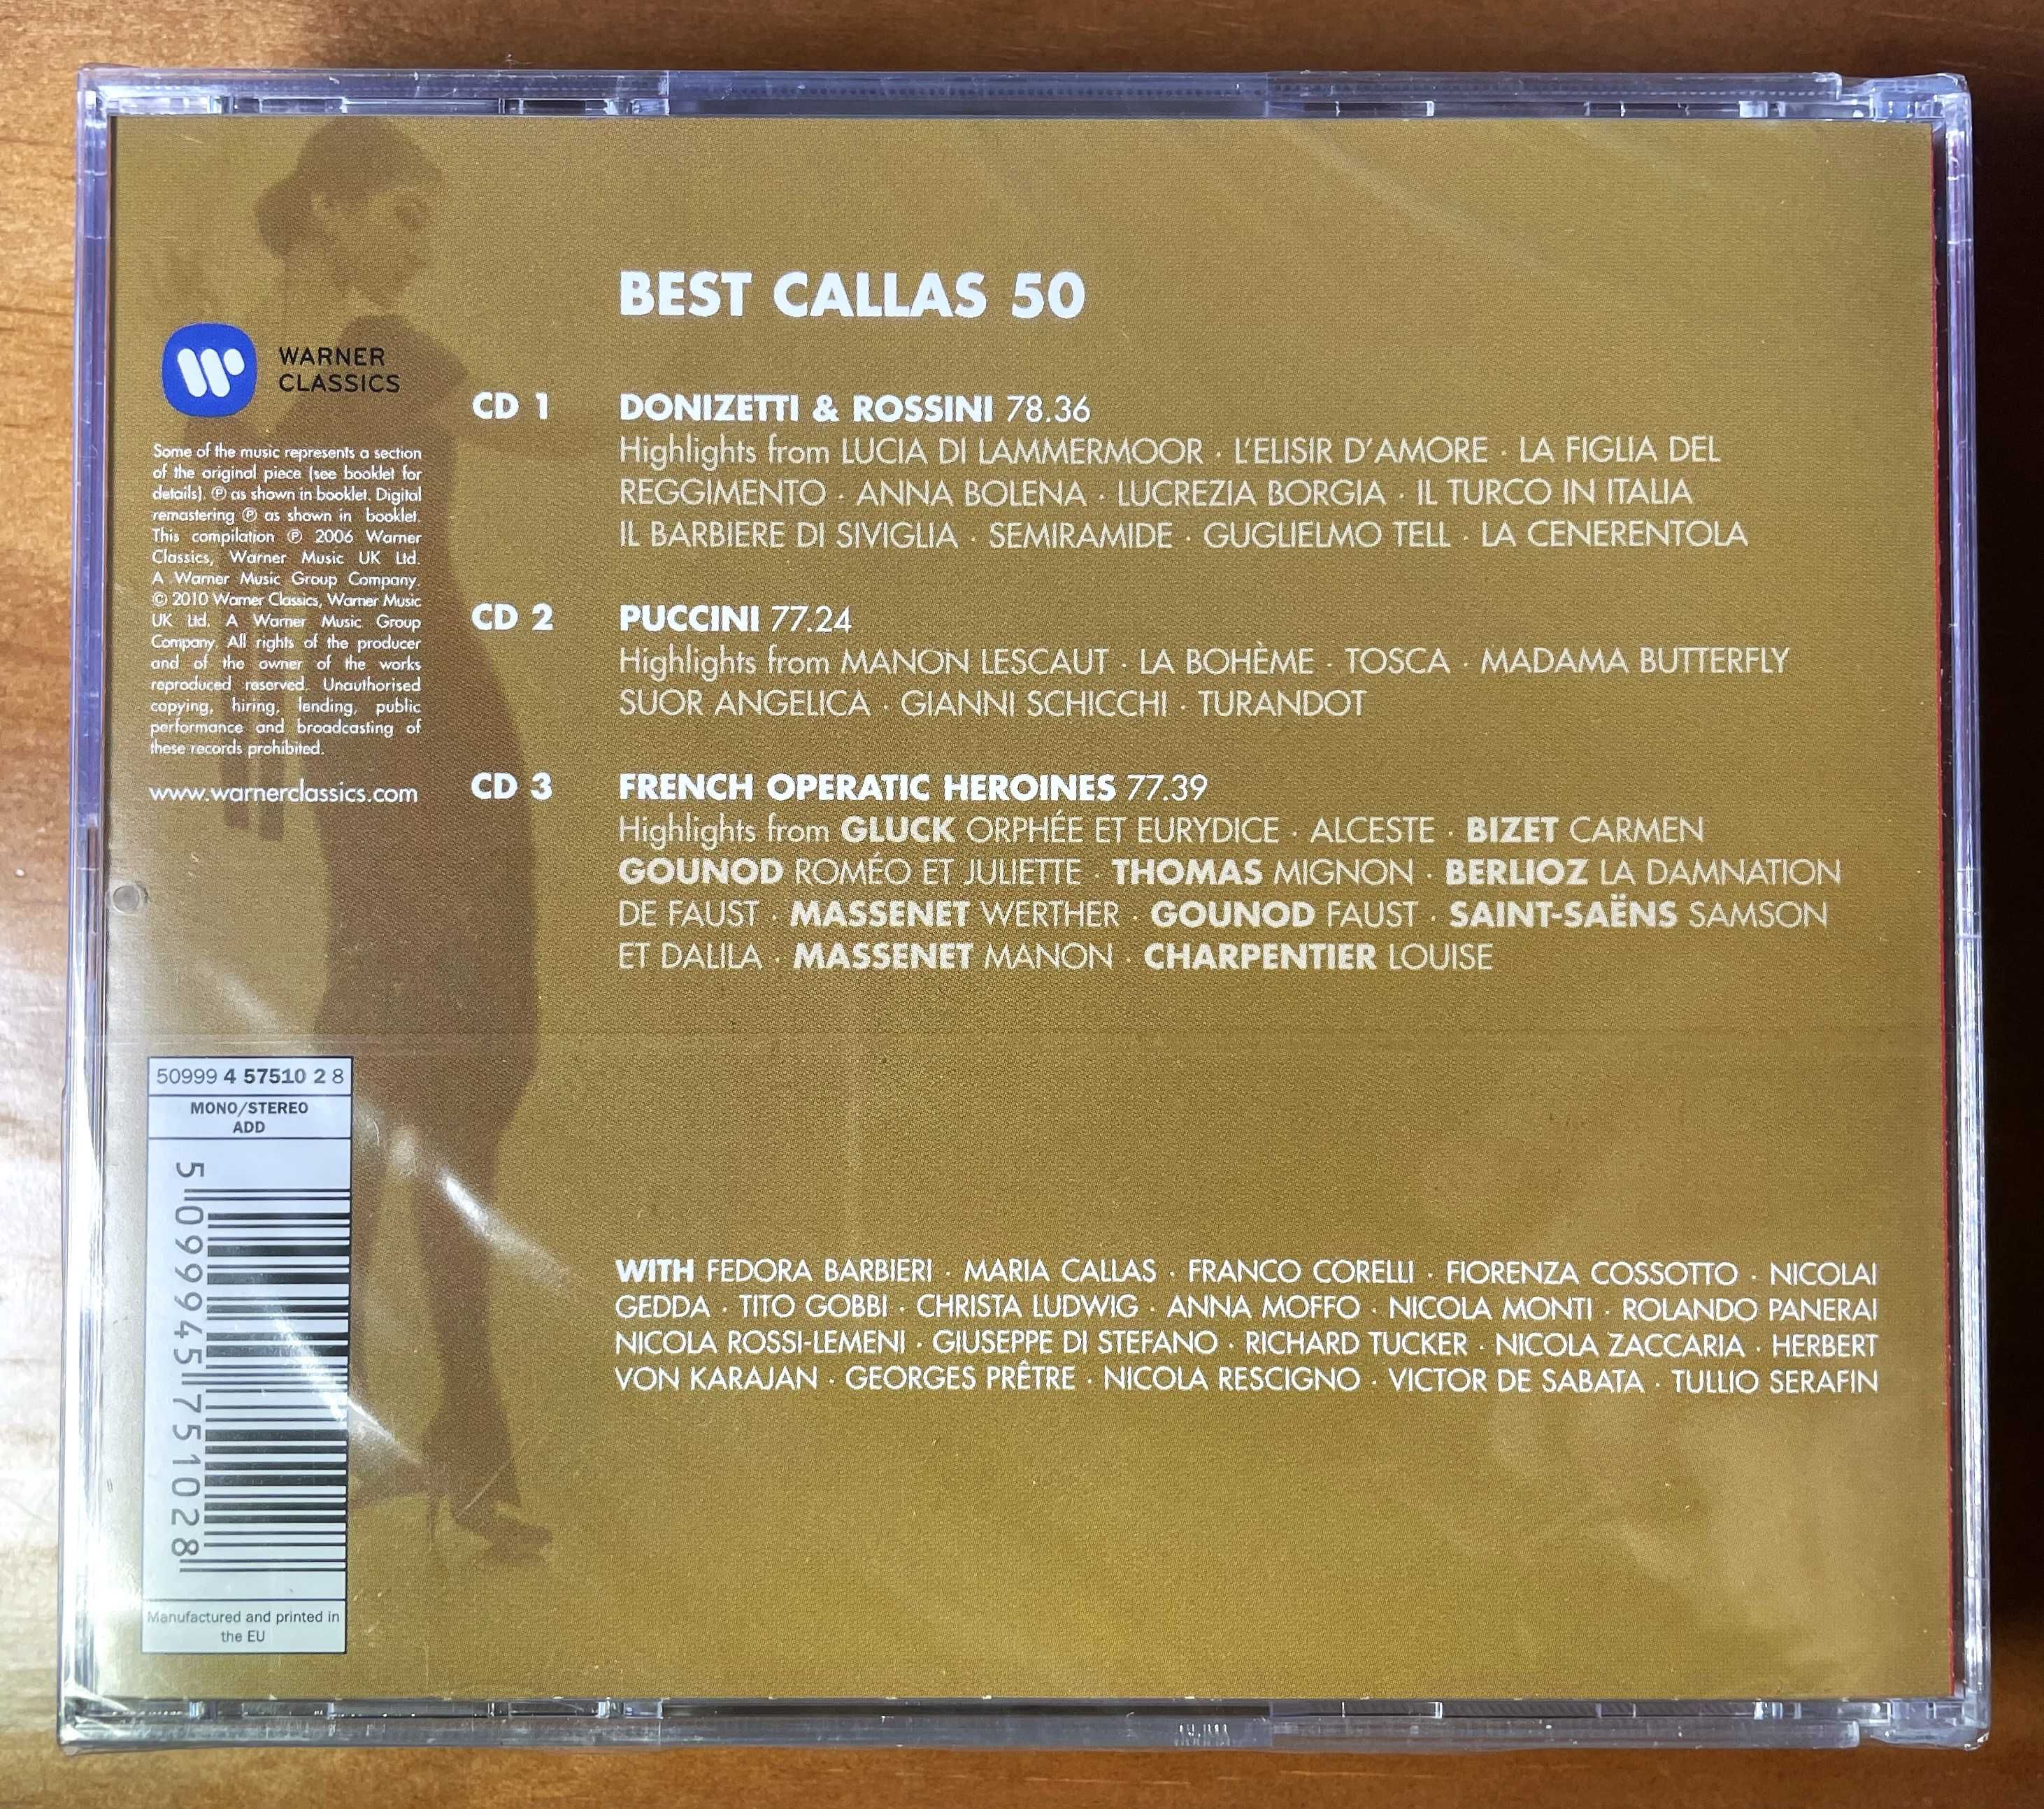 50 Best Callas - 3 CD's